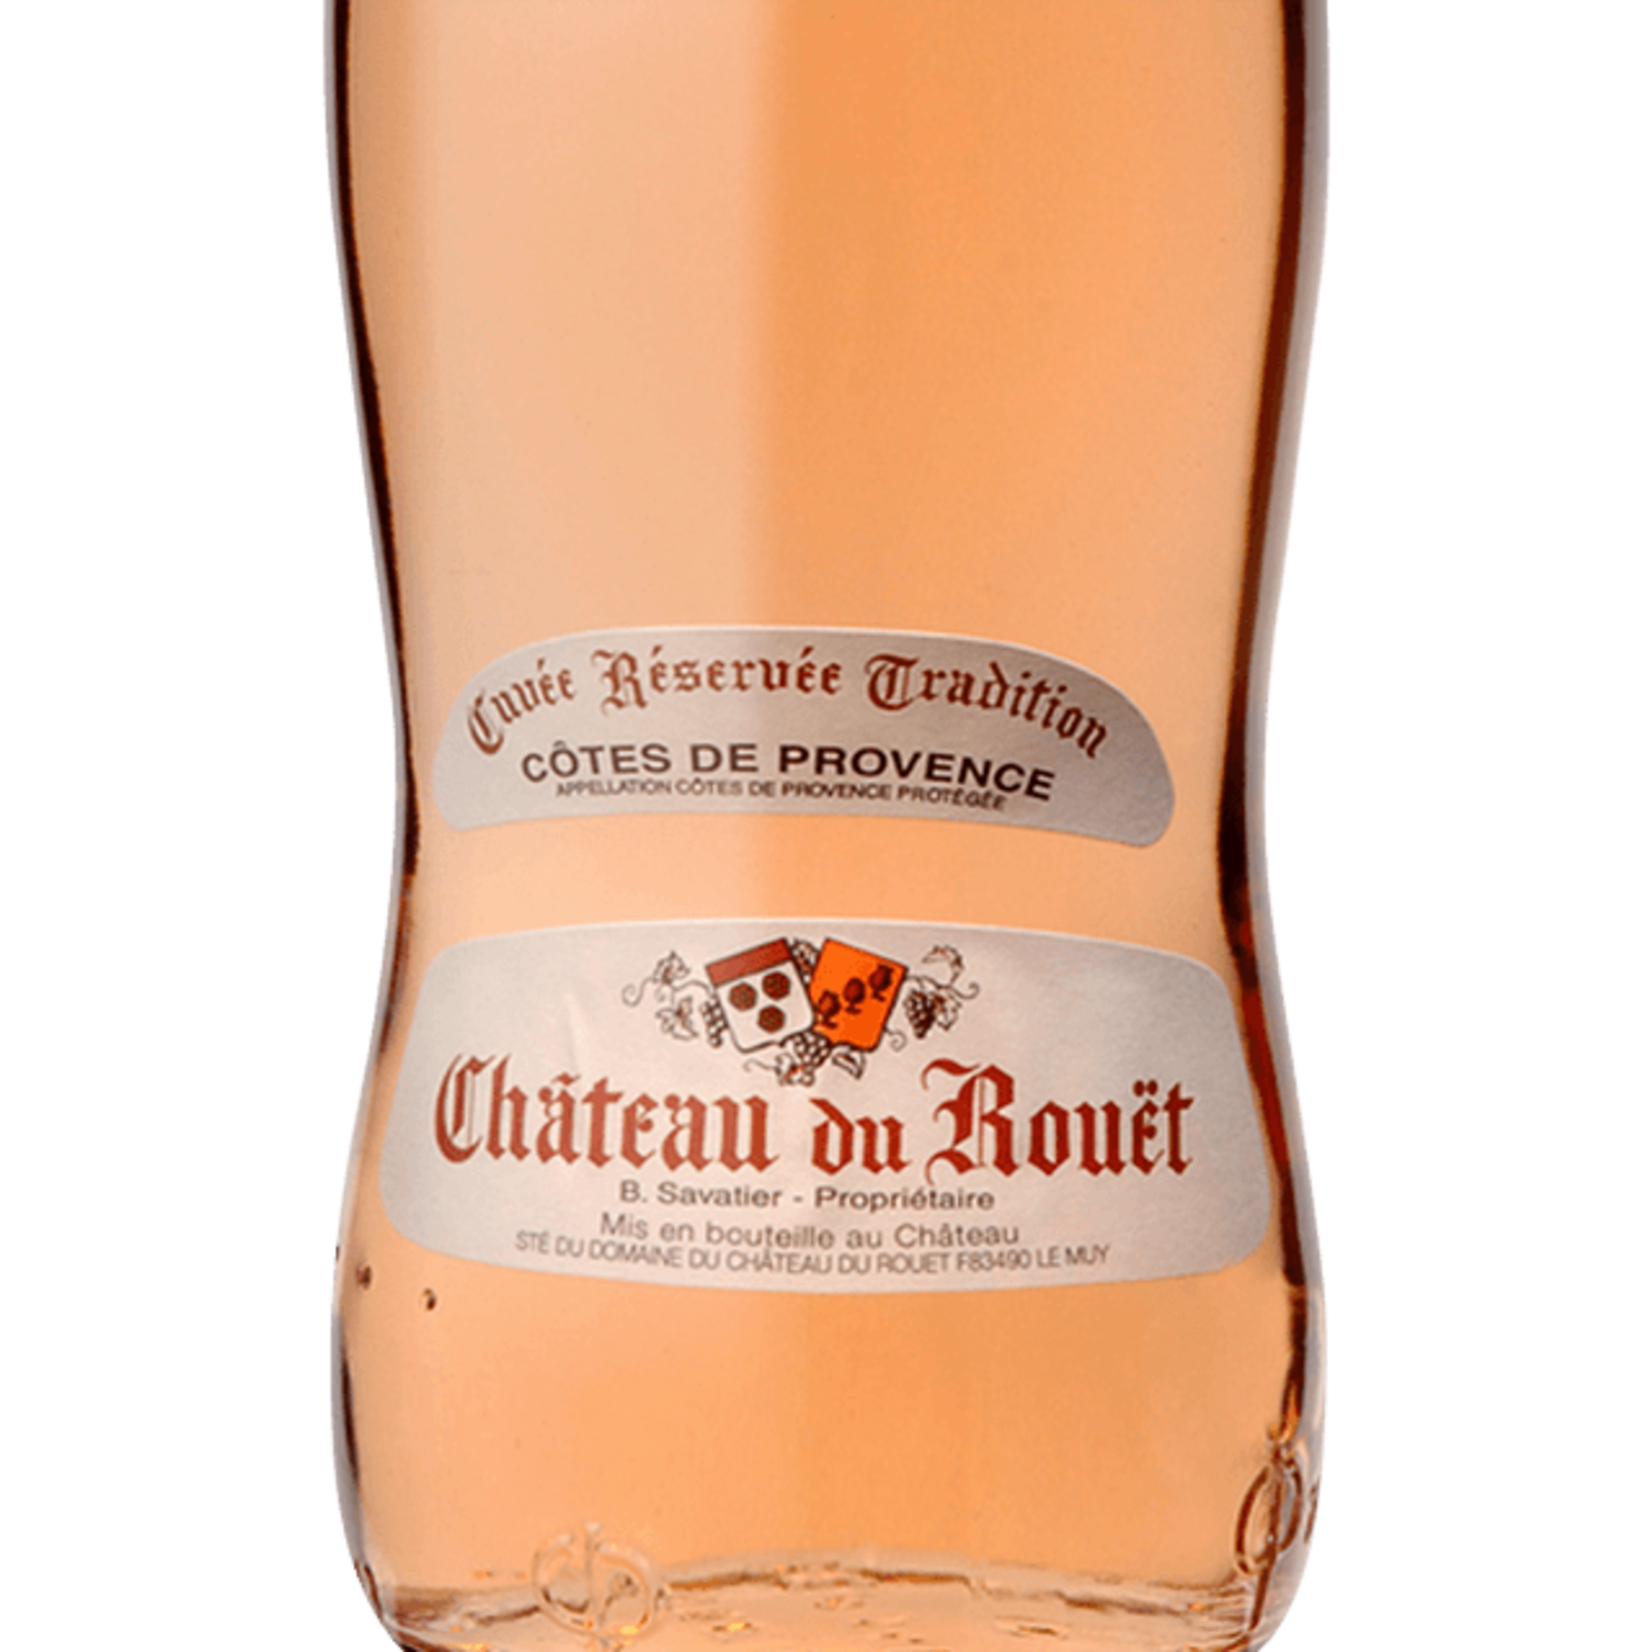 Wine Chateau du Rouet Cotes de Provence Cuvée Réservée Tradition Rosé 2020